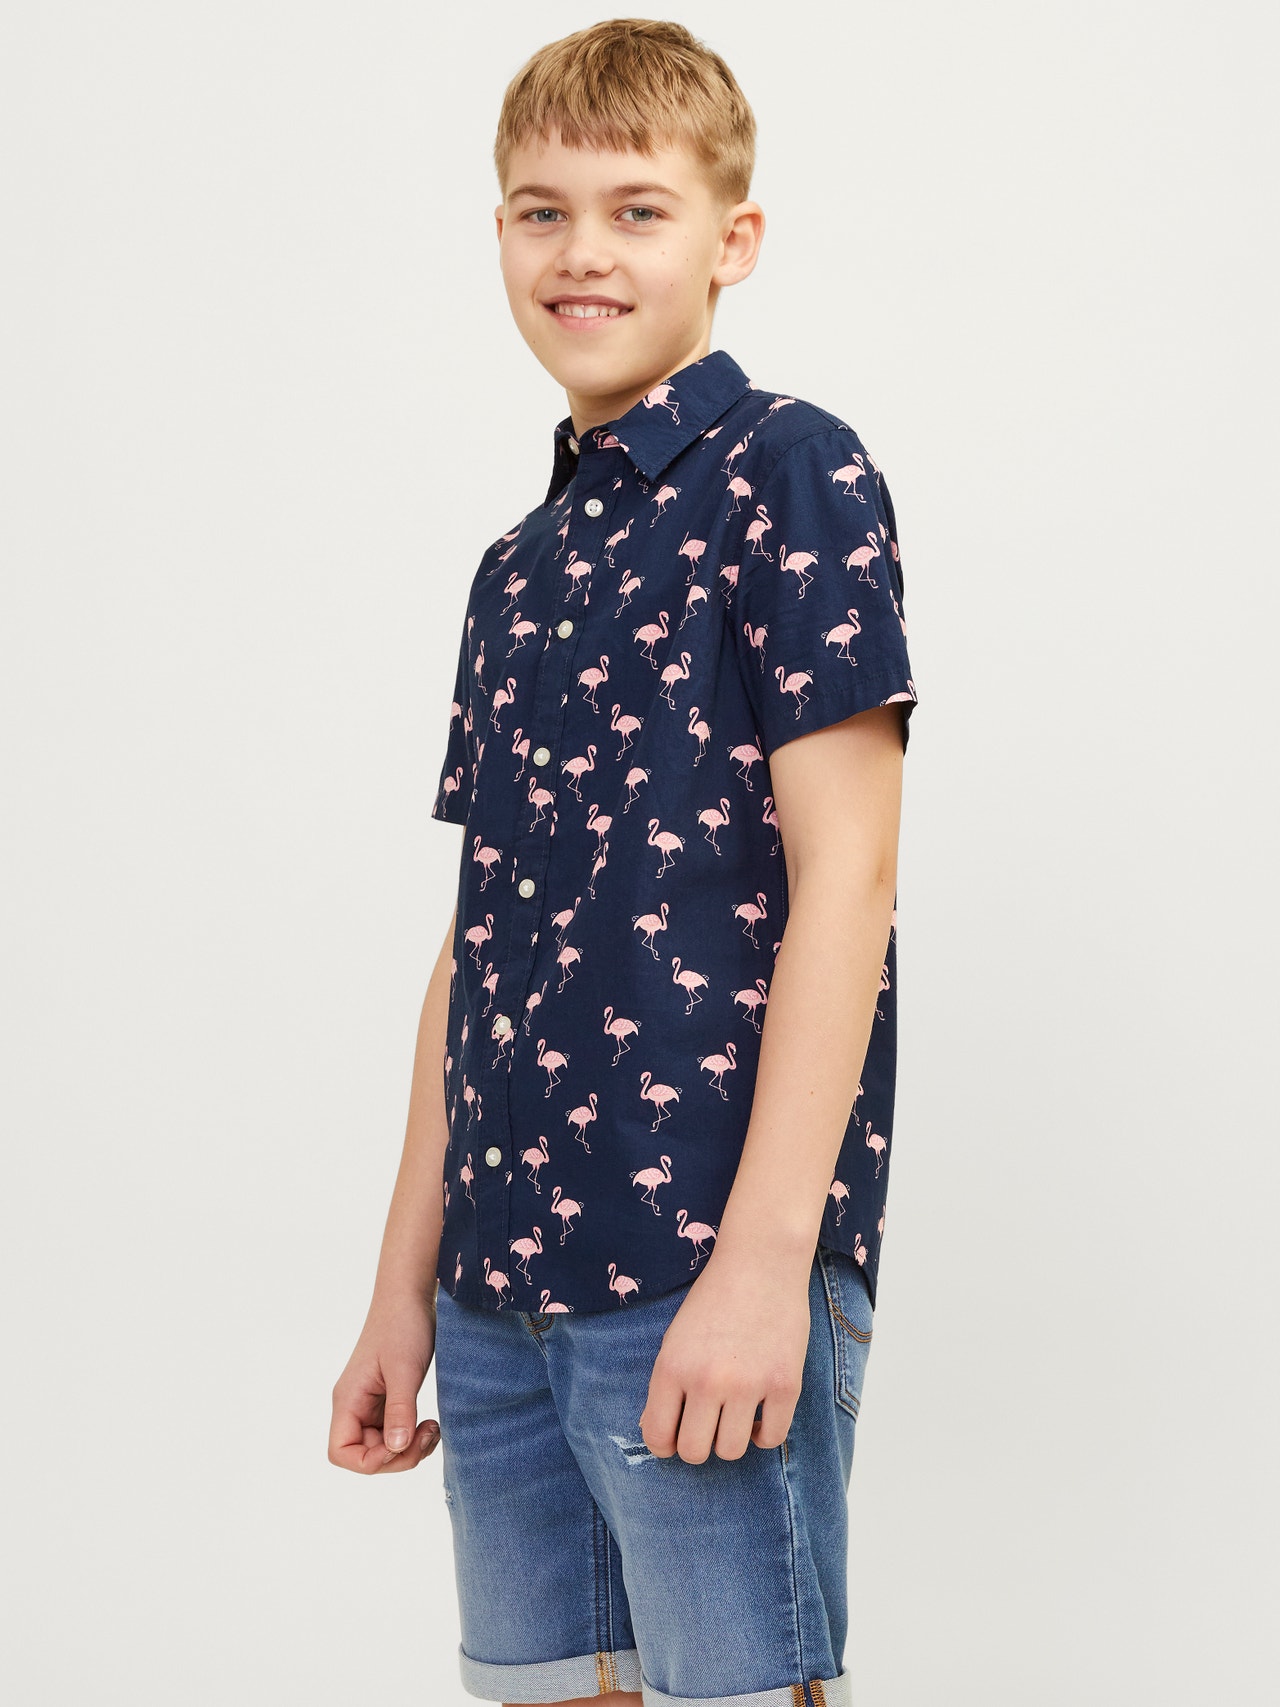 Jack & Jones Overhemd Voor jongens -Navy Blazer - 12249227